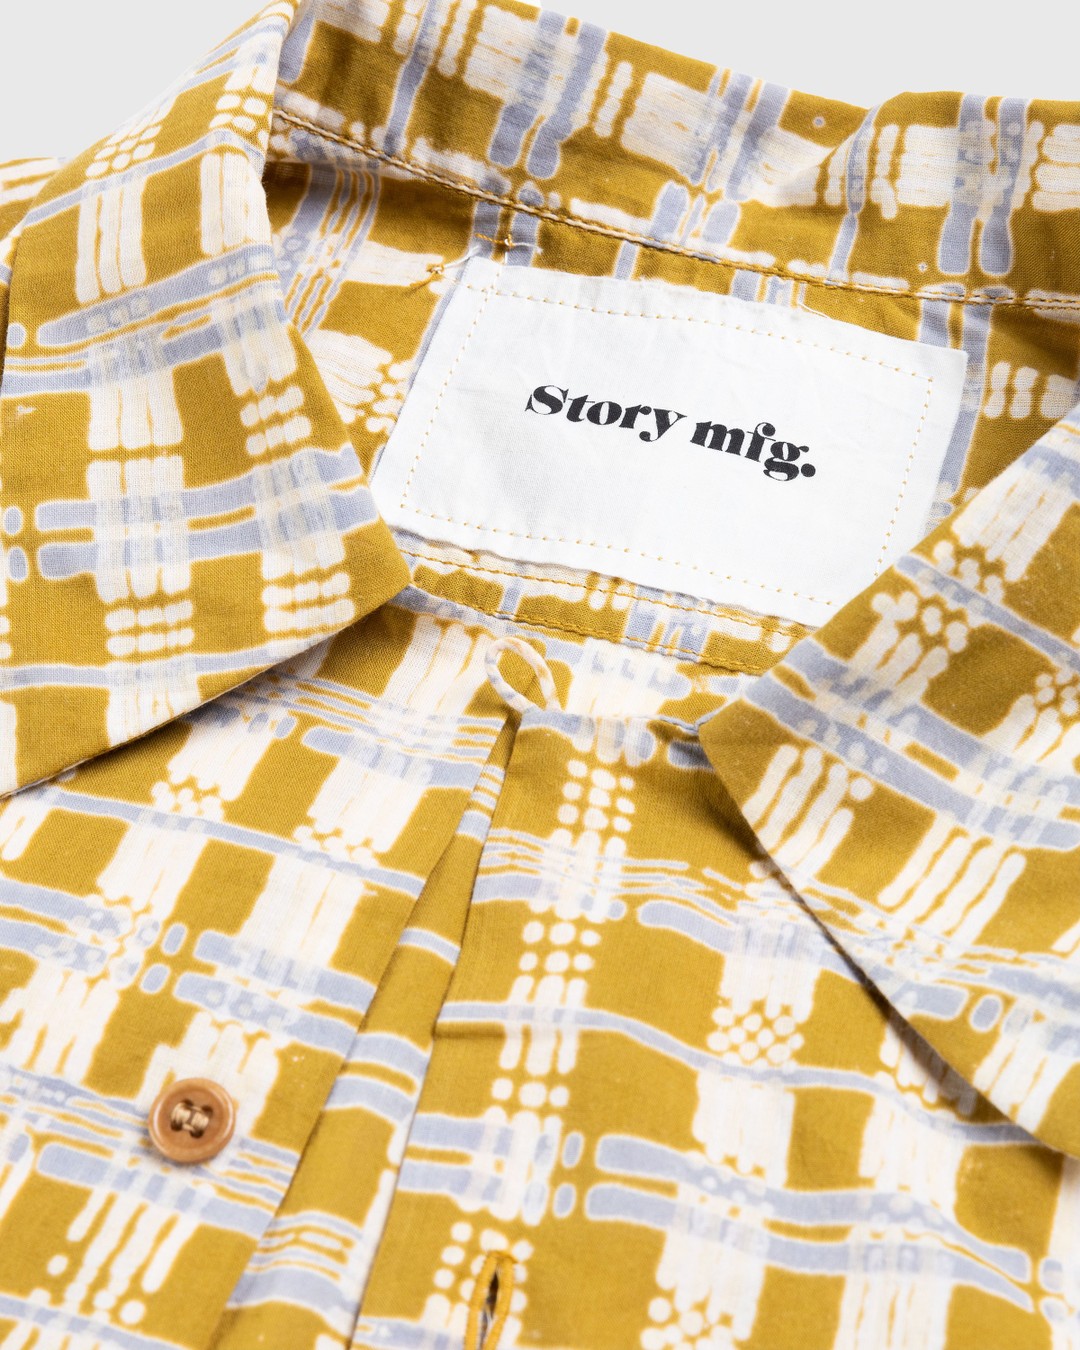 Story mfg. – Shore Shirt Check Block - Shirts - Yellow - Image 5